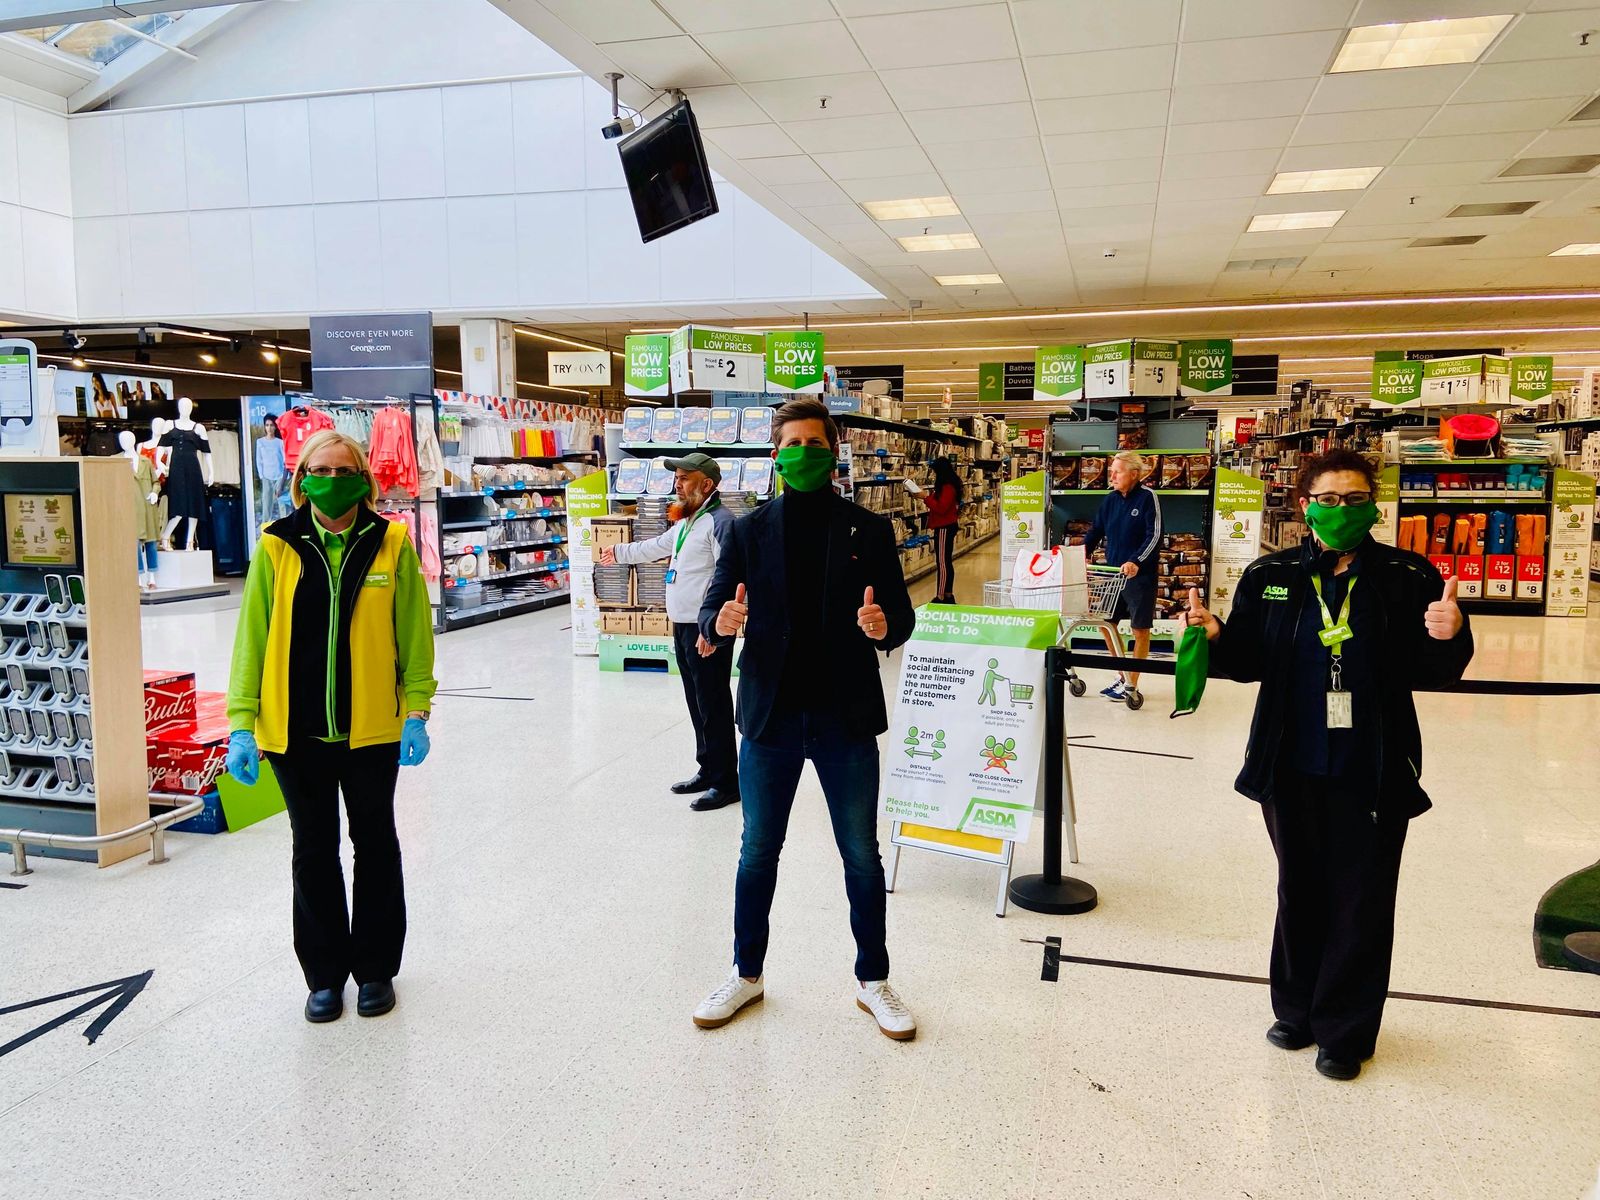 Owen Scott donate PPE to supermarket staff